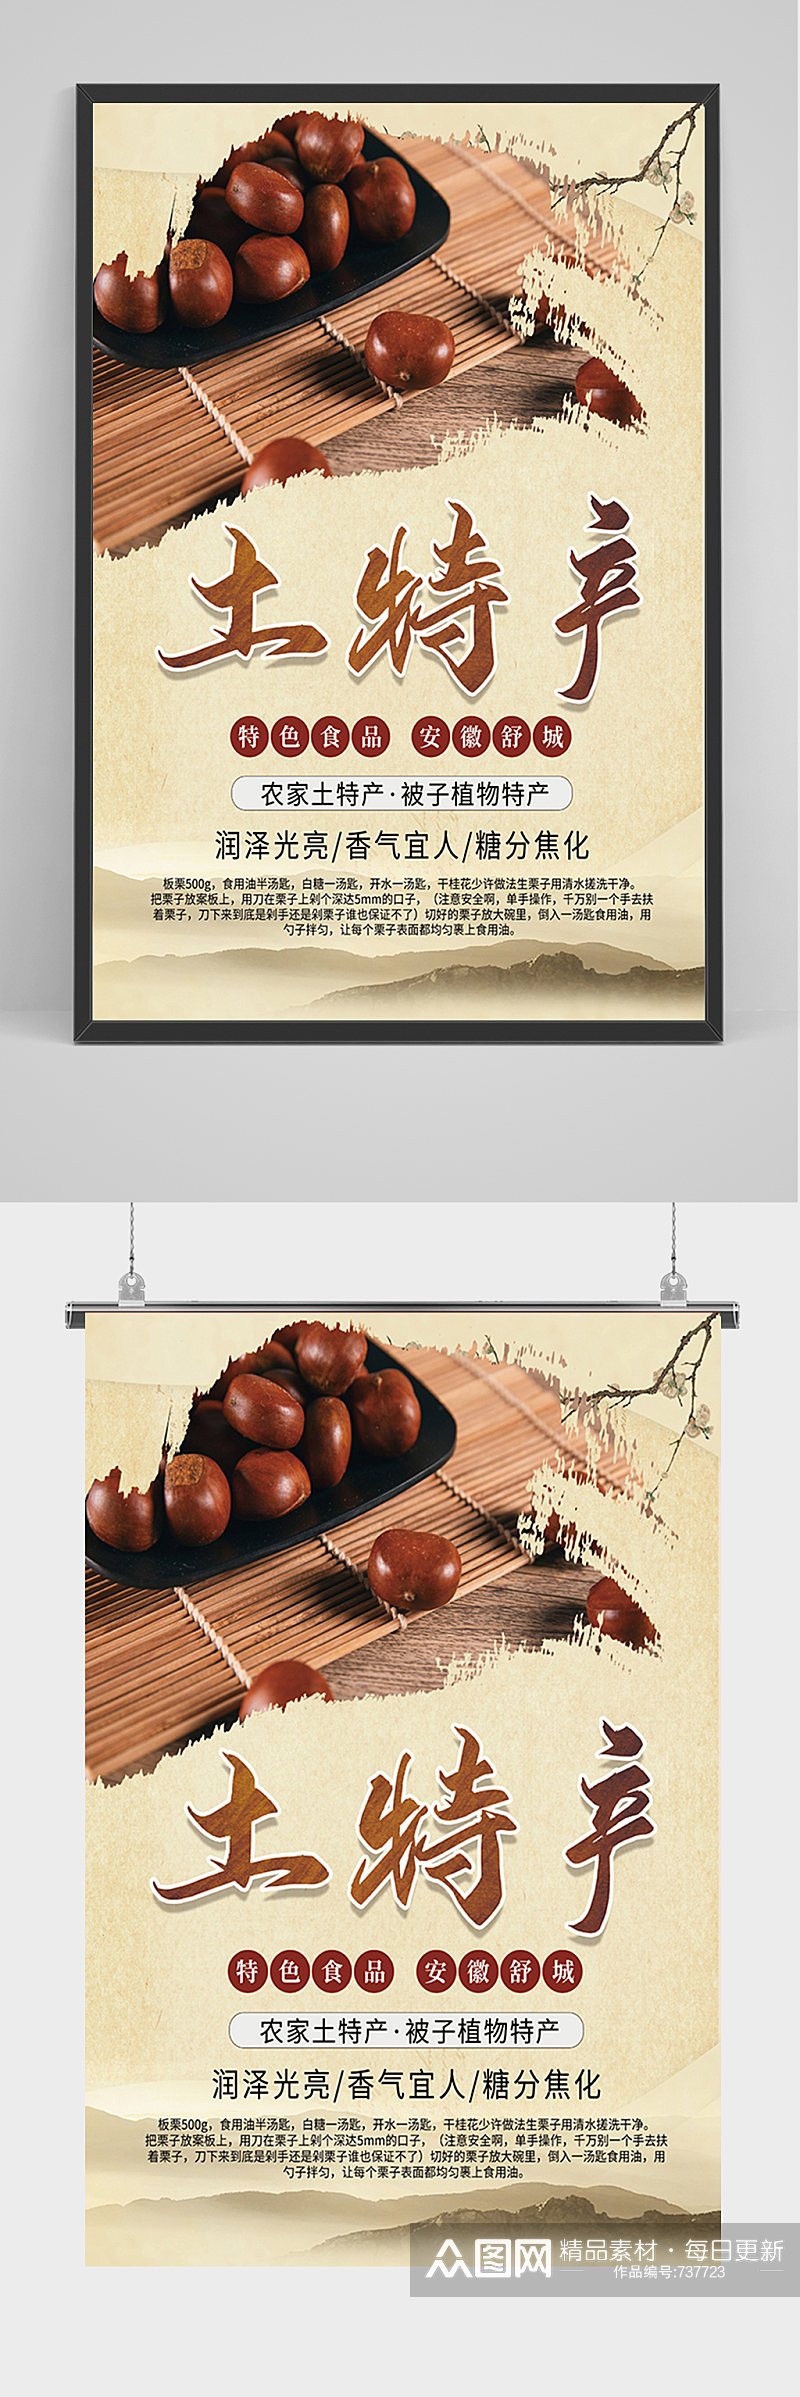 中国风土特产板栗海报素材